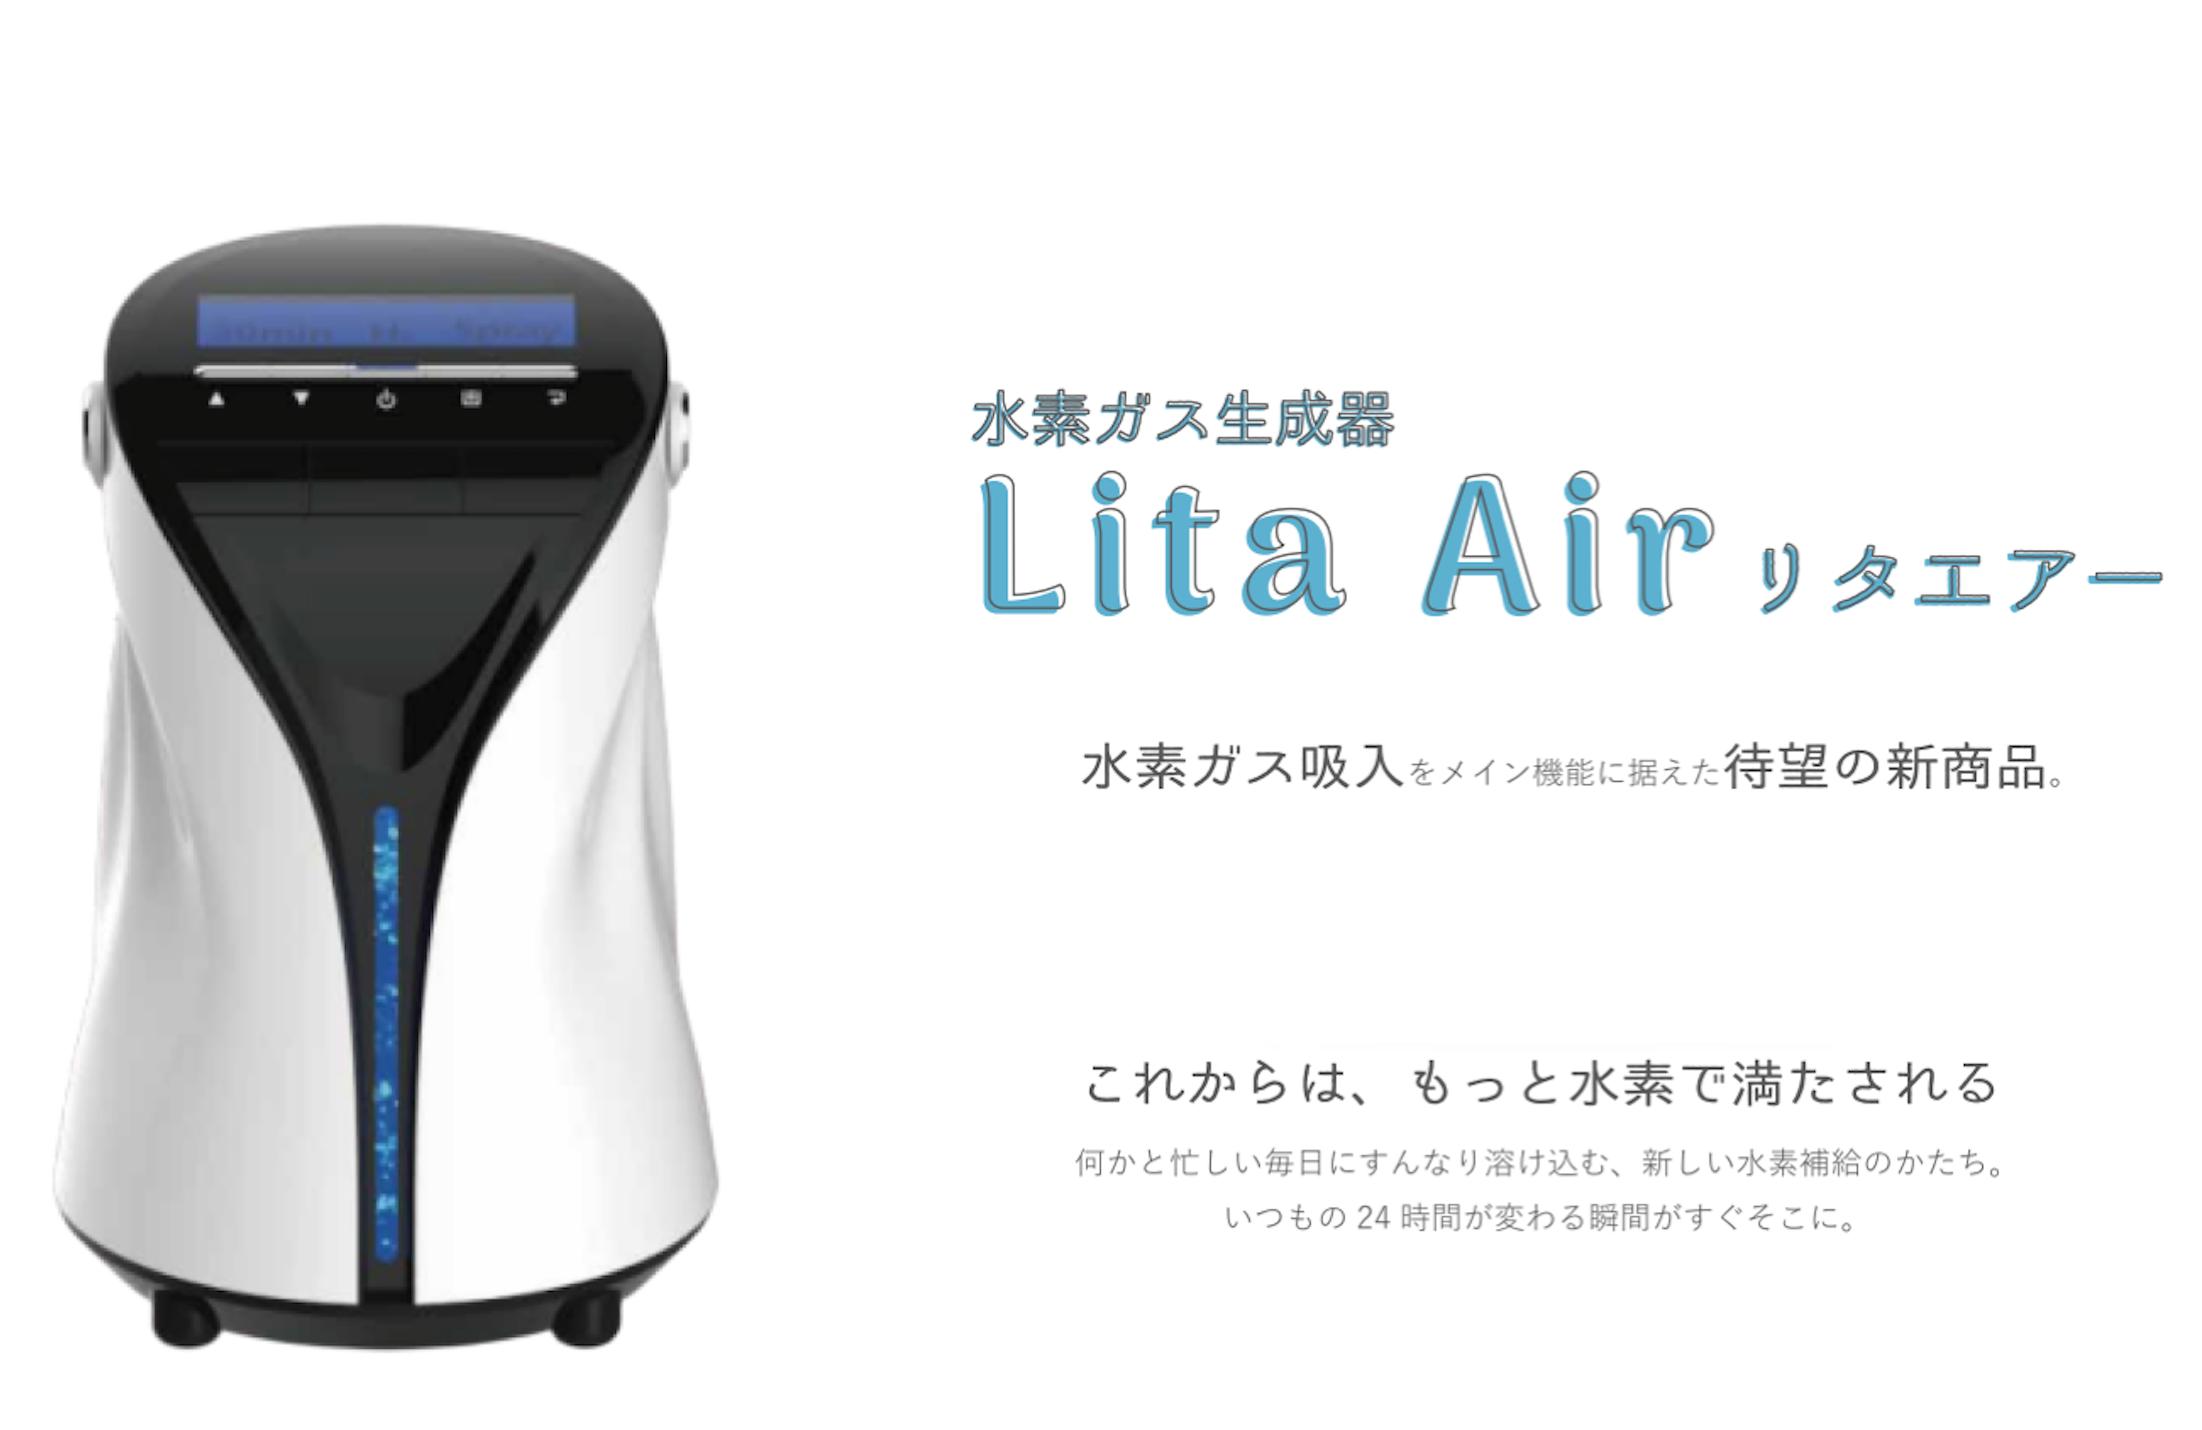 水素ガス生成器リタエアー(Lita Air)のレンタルサービスを2020年2月1日 